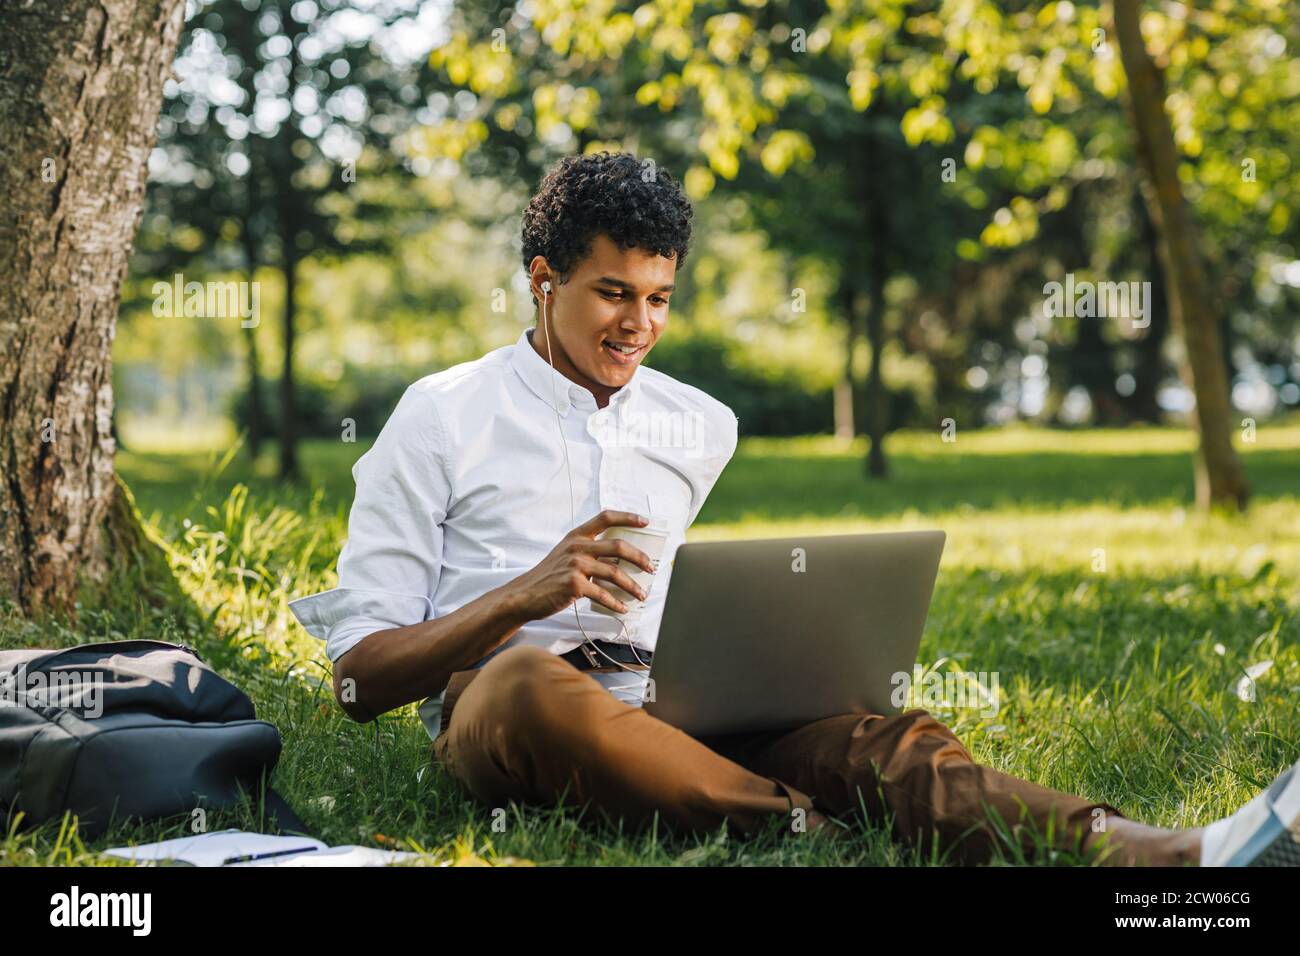 Lächelnder afroamerikanischer College-Junge mit einem Laptop im Park sitzend. Junger Mann, der auf dem Laptop schaut und Kaffee trinkt. Stockfoto